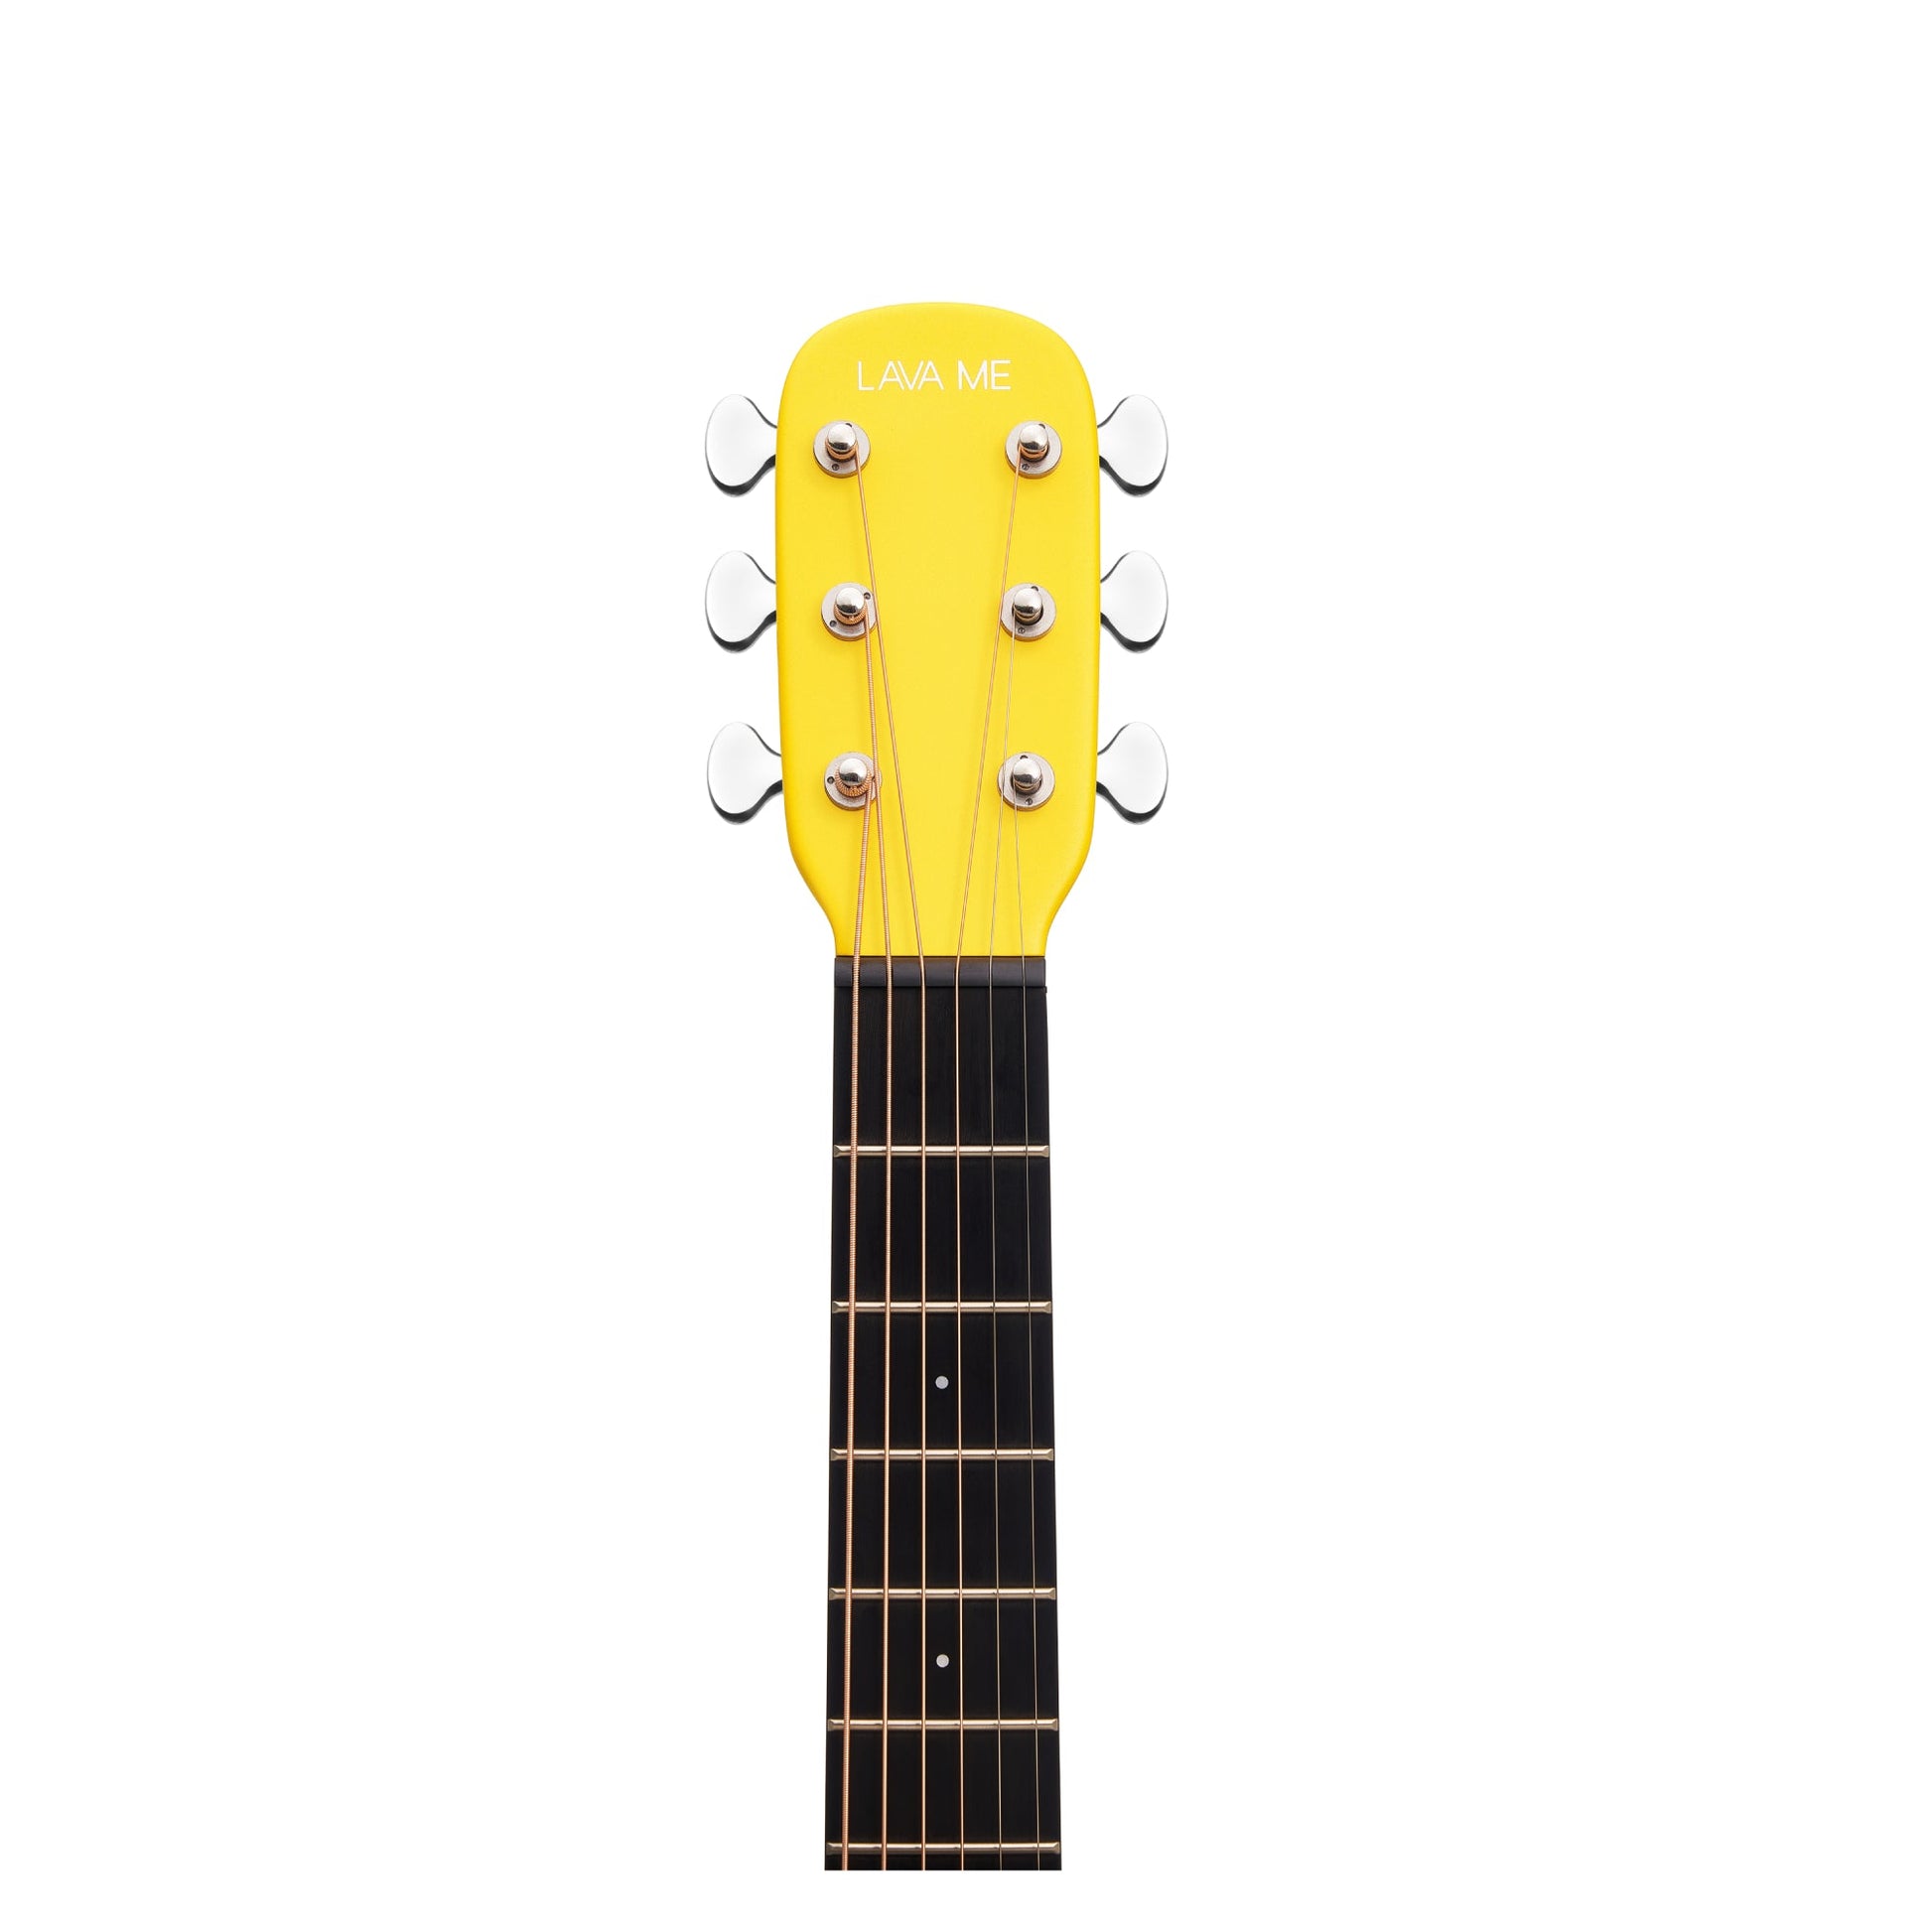 Đàn Guitar Acoustic Lava Me 3 Limited - Size 38, Golden Hour - Việt Music